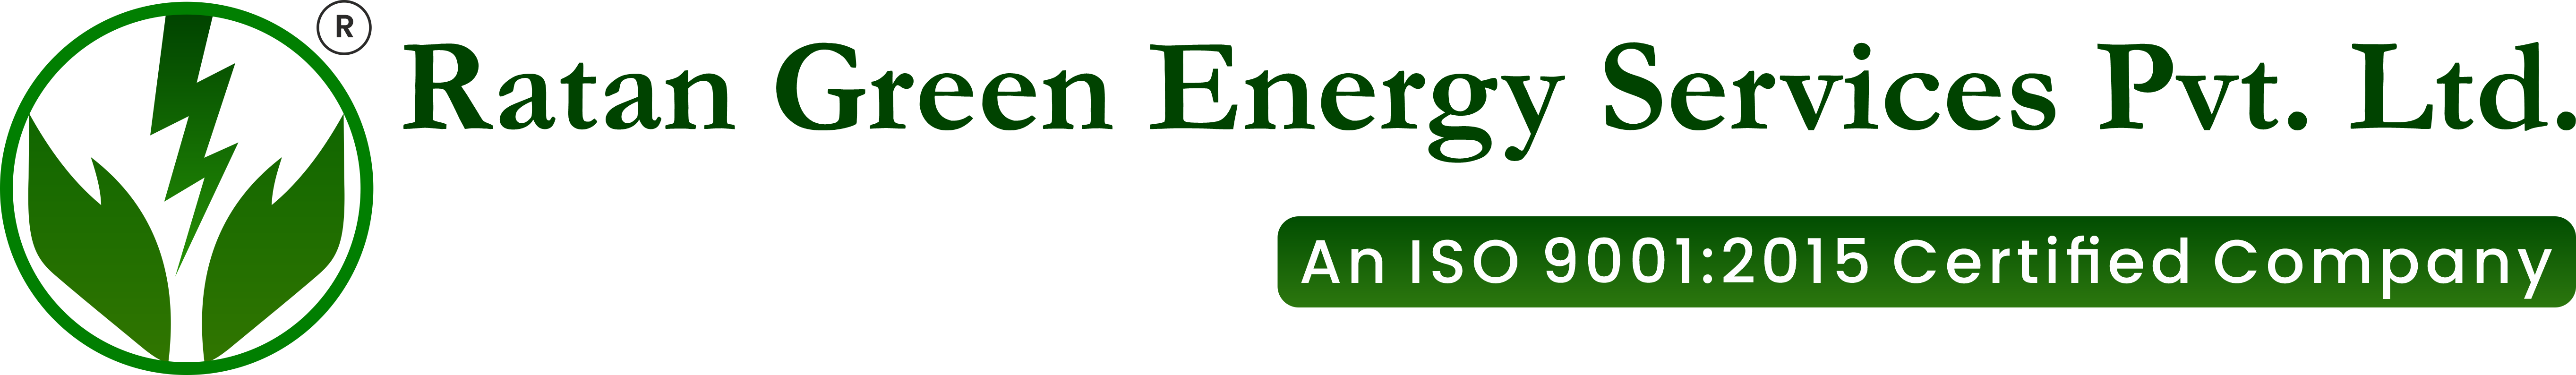 Ratan Green Energy Services